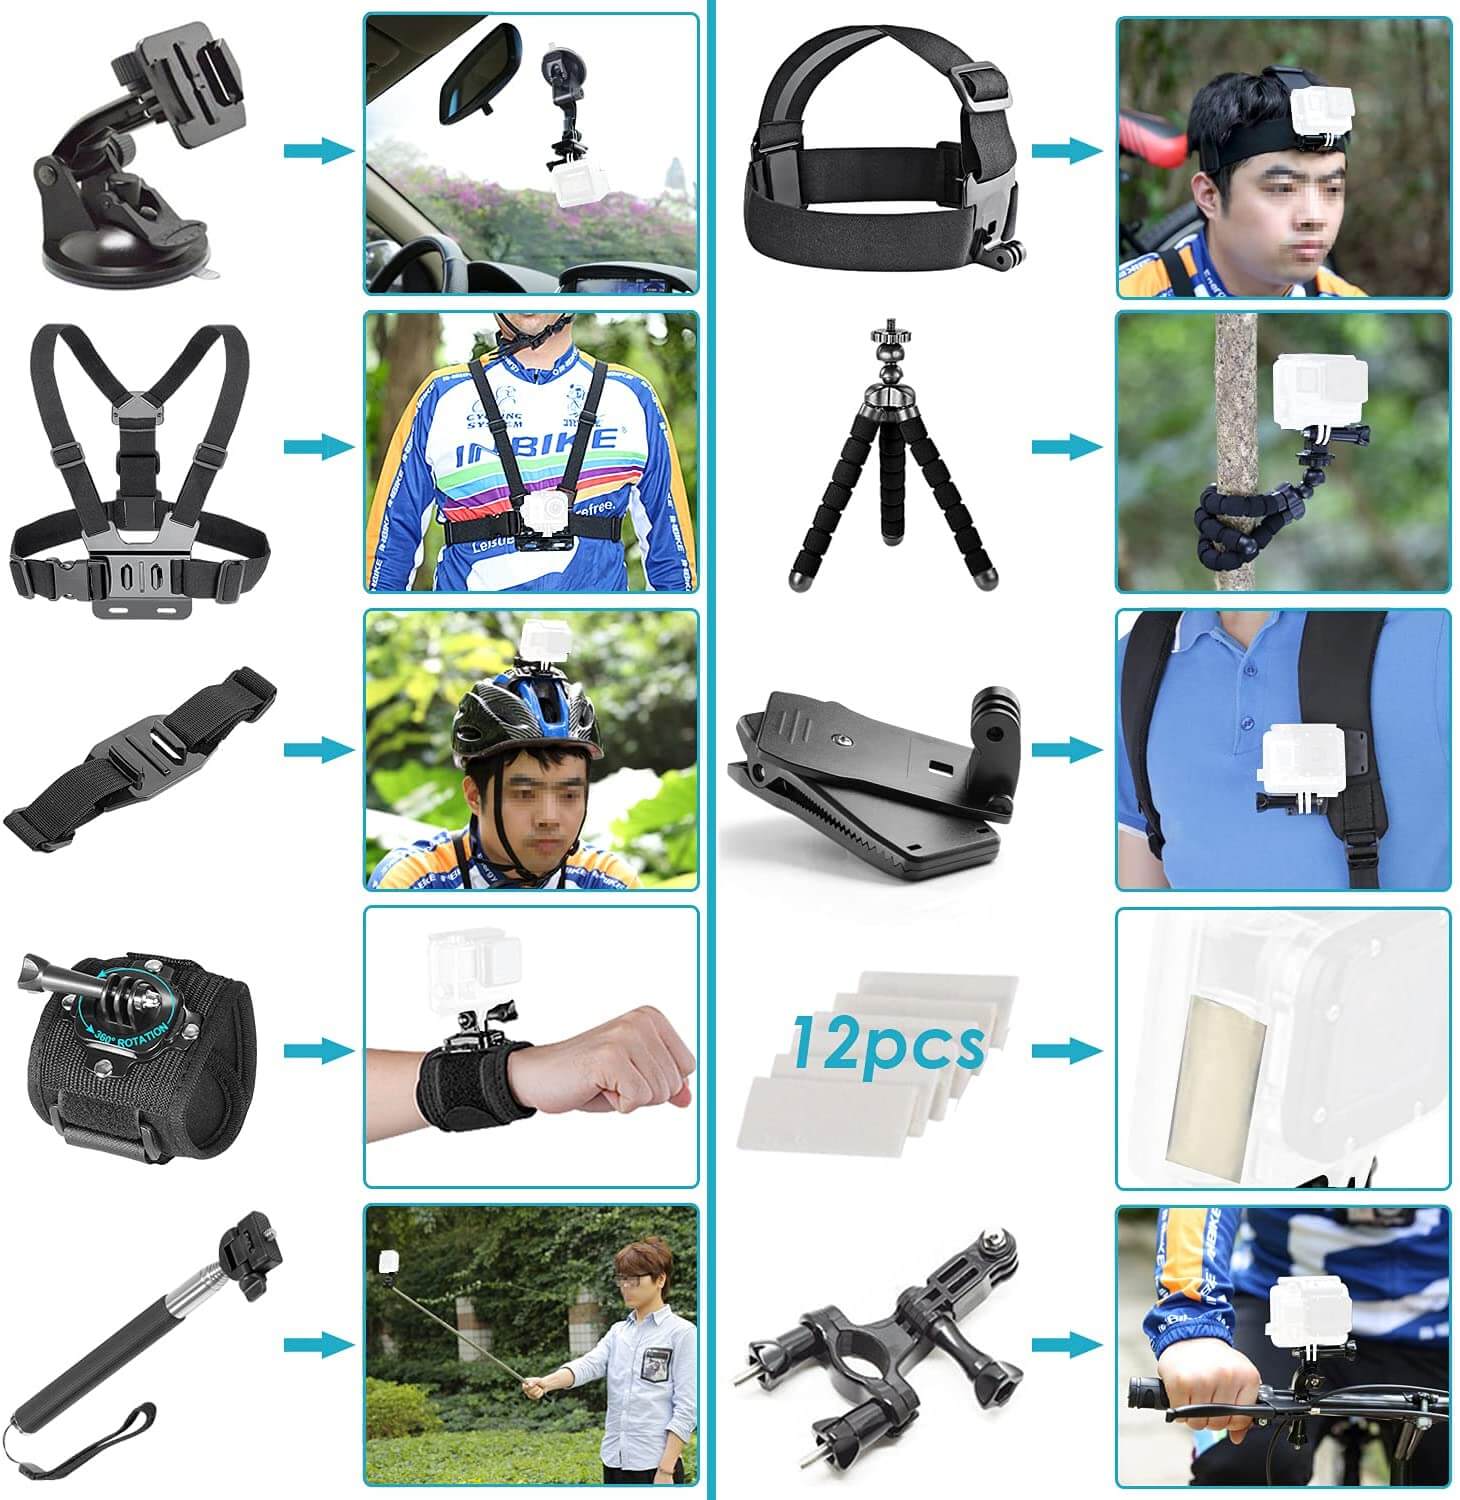 Kit d'accessoires Deyard pour GoPro (Kit d'accessoires pour GoPro